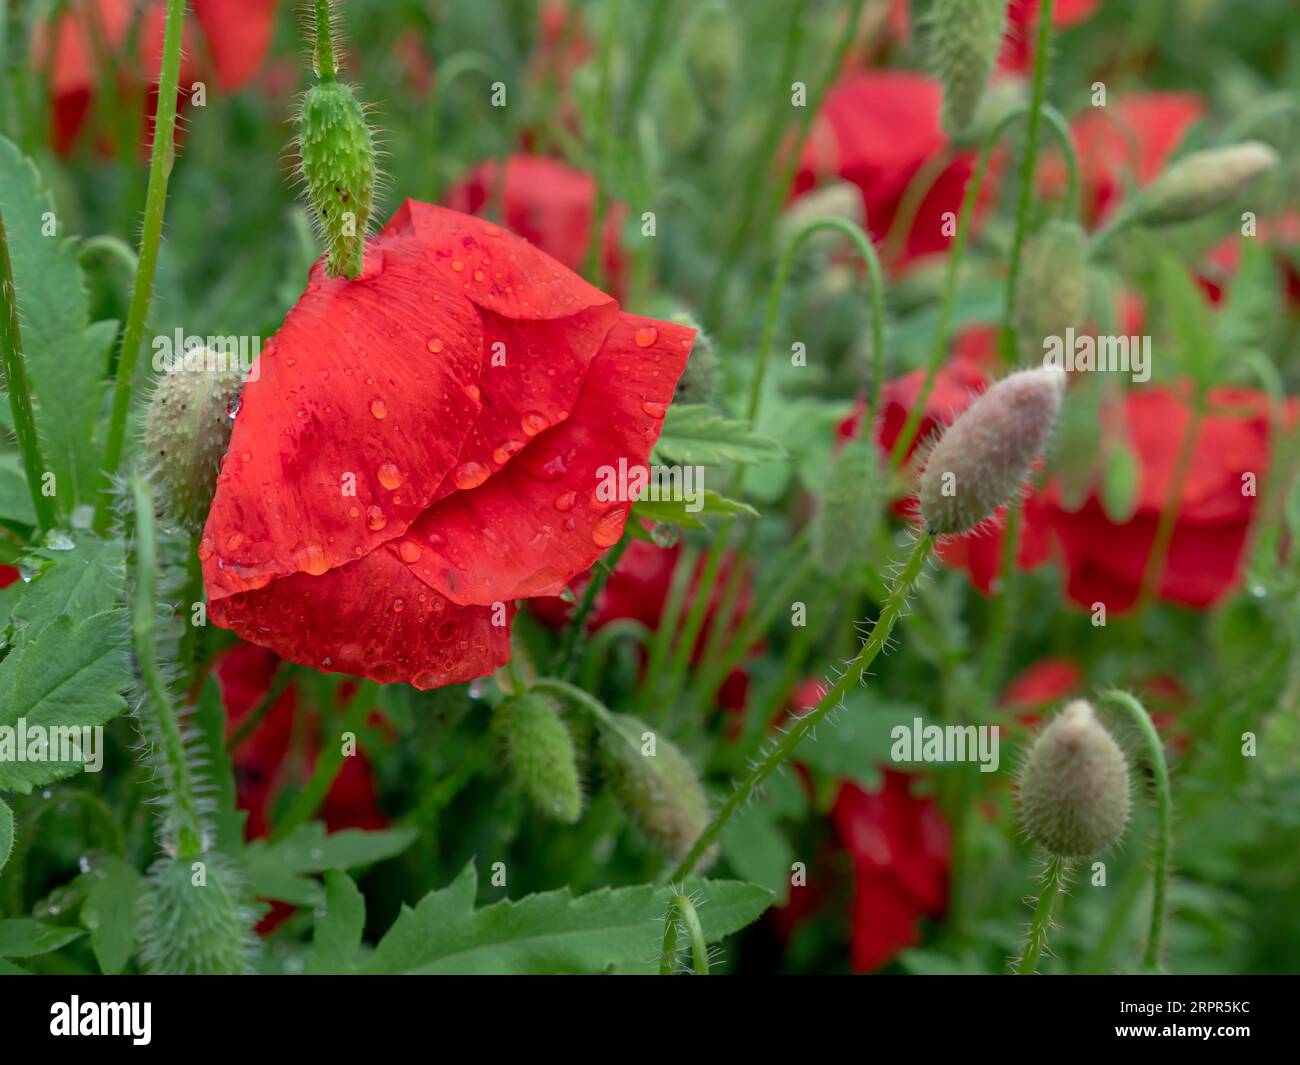 Nahaufnahme einer nassen roten Mohnblume mit großen Blütenblättern bedeckt von Regentropfen und grünen, haarigen Knospen, die in einer Stadt wachsen. Stockfoto